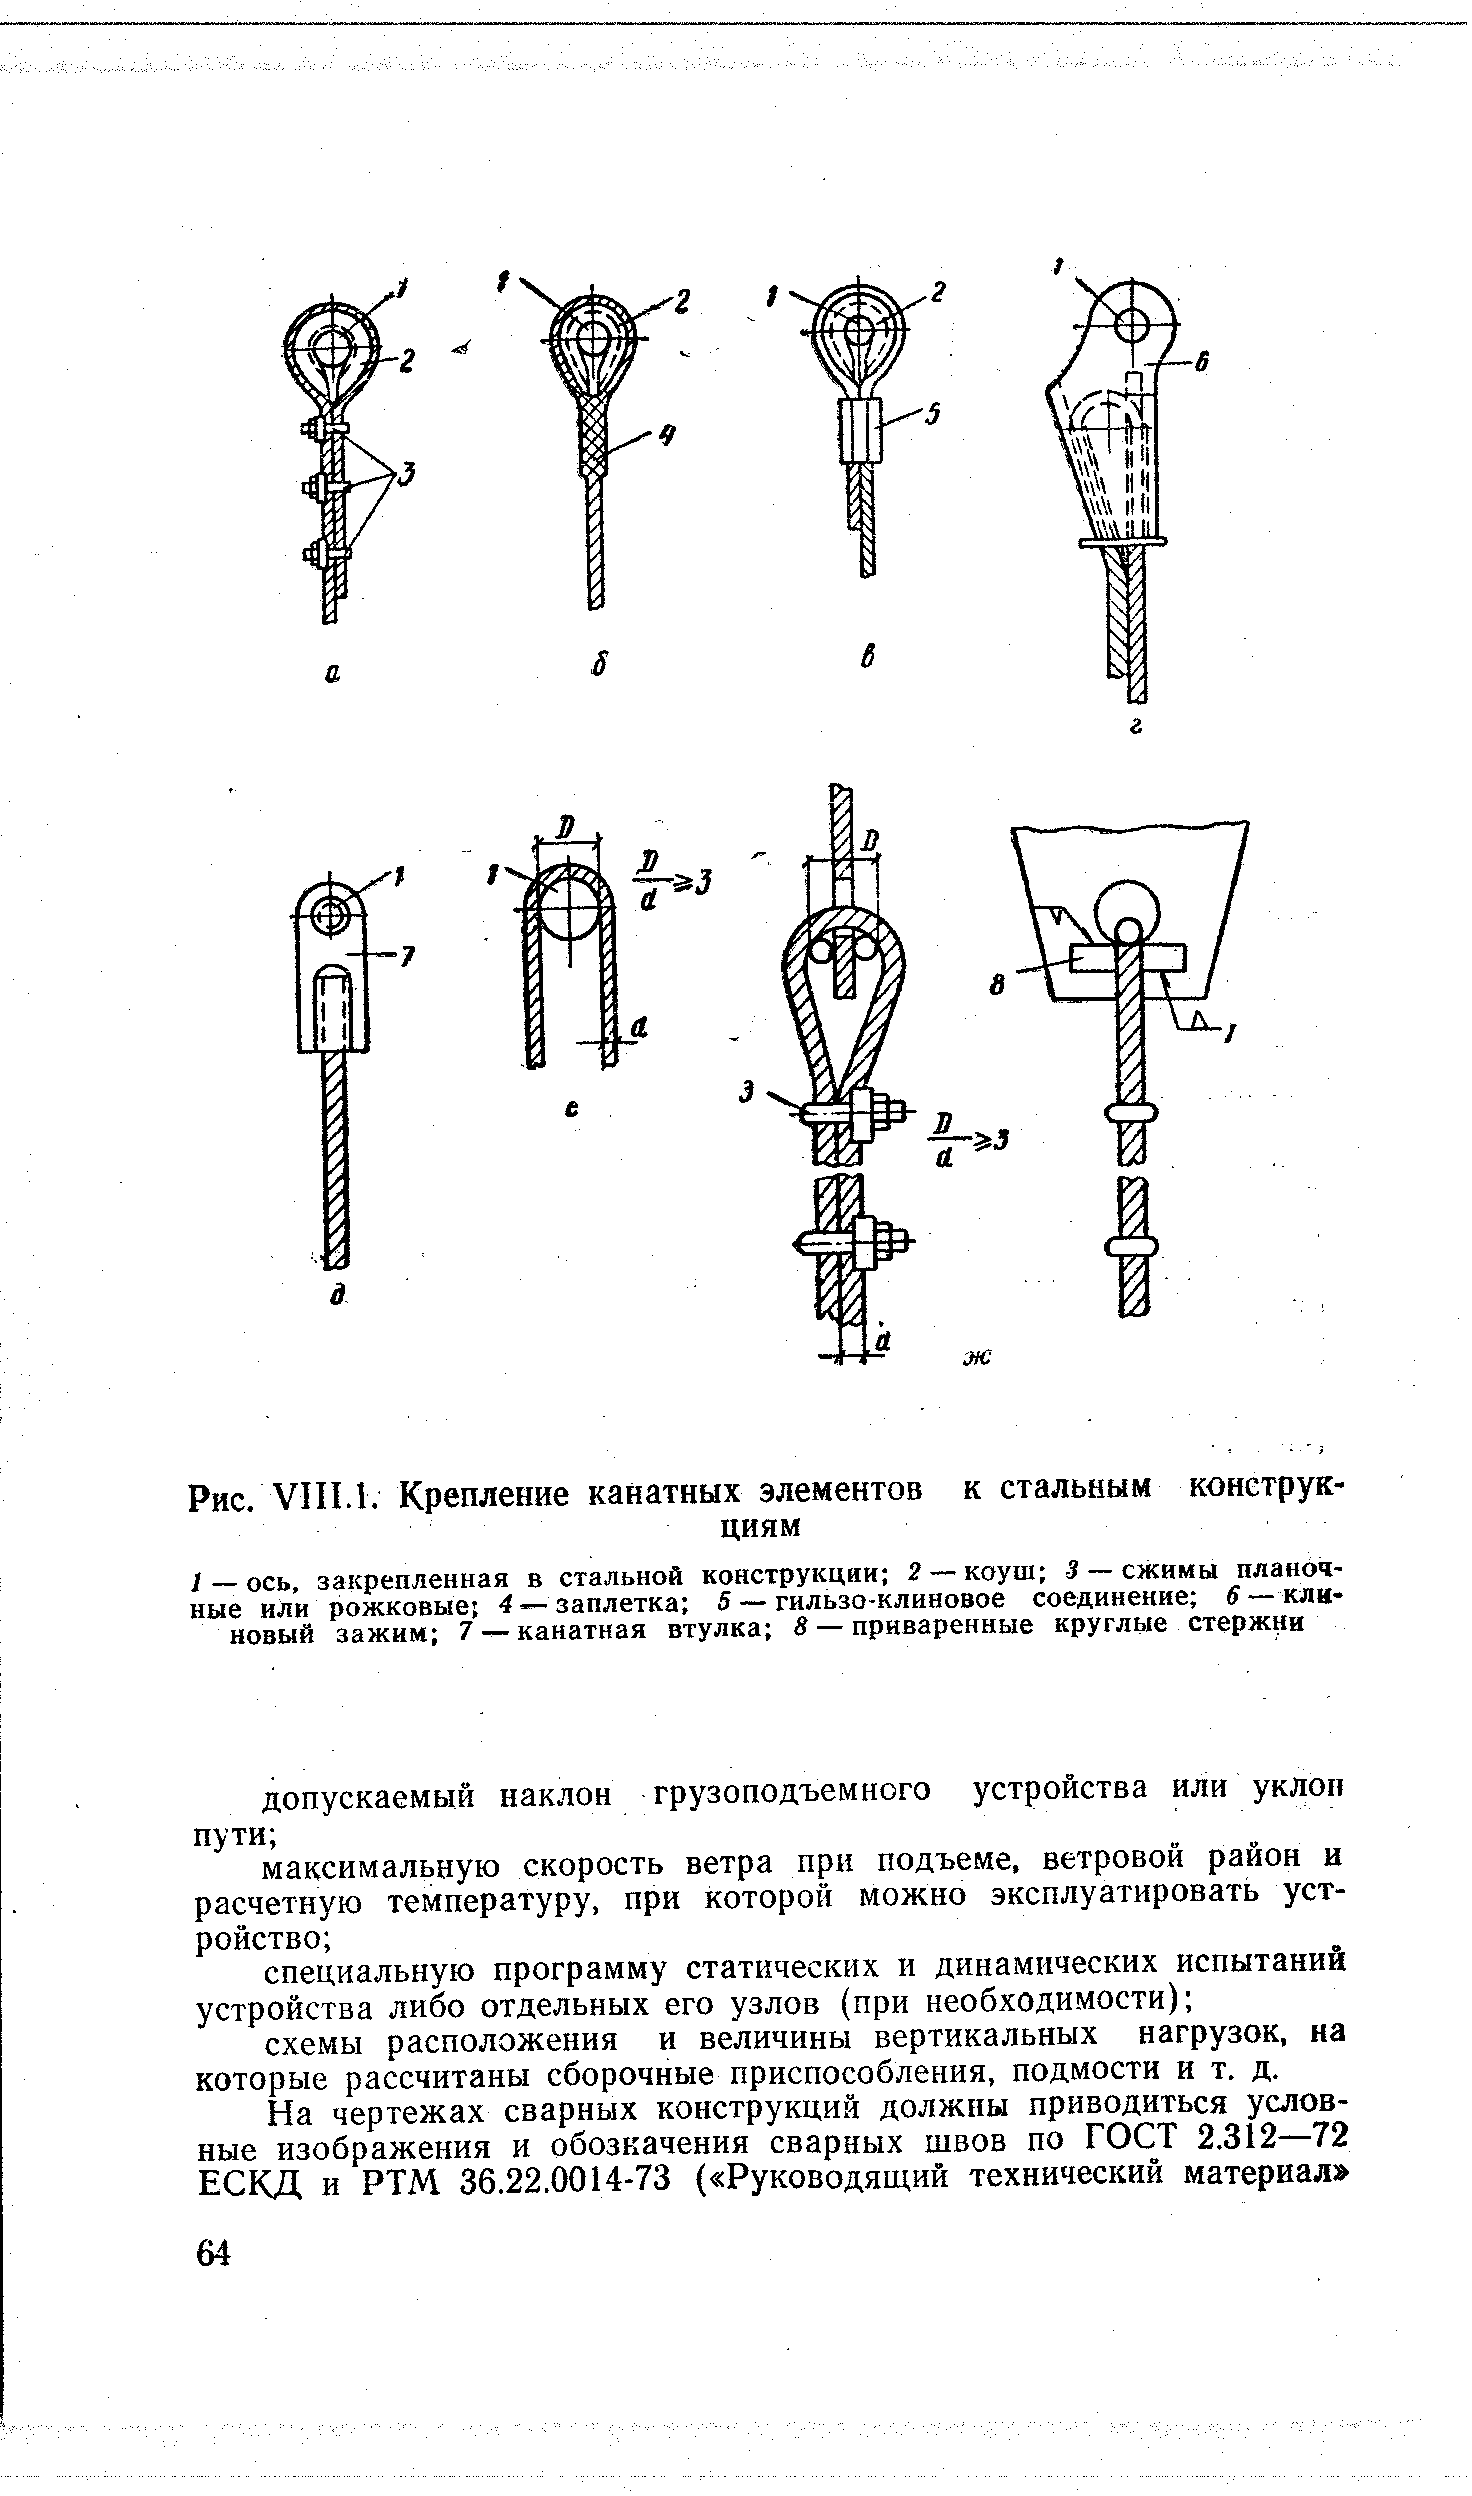 Рис. VIII.l. Крепление канатных элементов к стальным конструкциям
